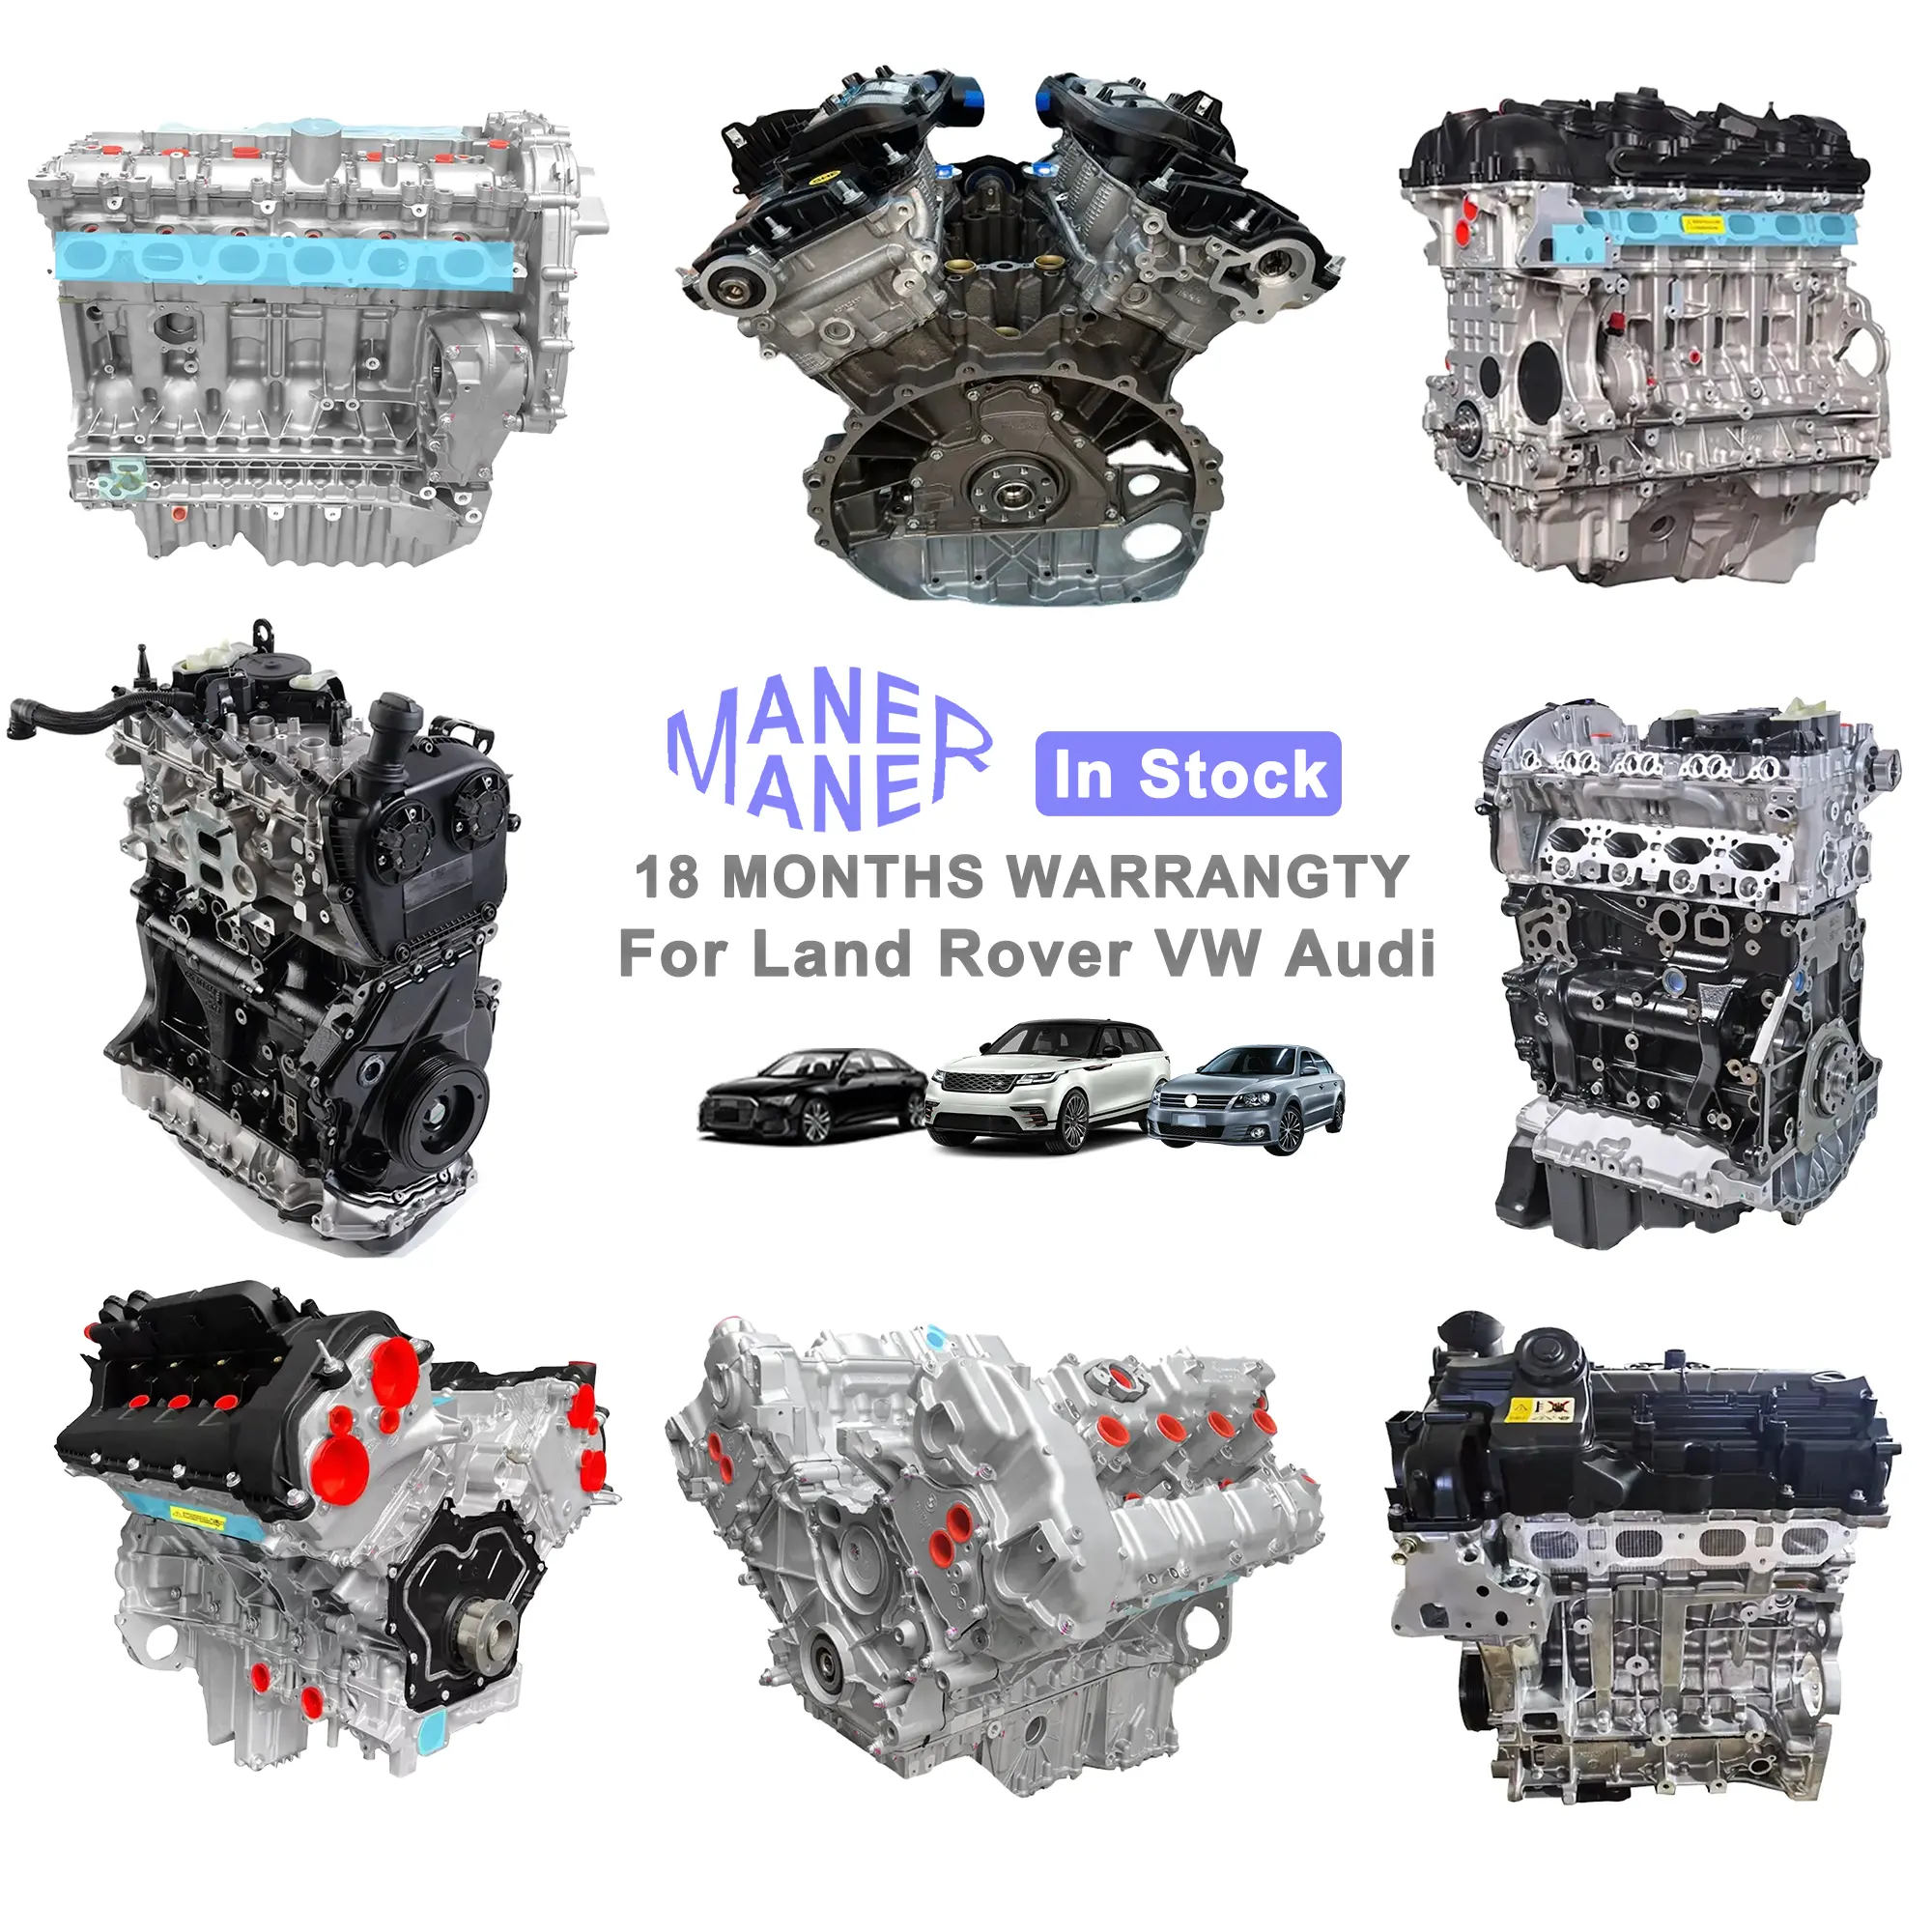 مجموعة محركات قطع غيار سيارات من مانر لأودي فولكس فاجن لاند روفر إيفوك بي دبليو بنز 2.0L TSI BPJ EA888 CDN CNC EA111 DPF CDZ